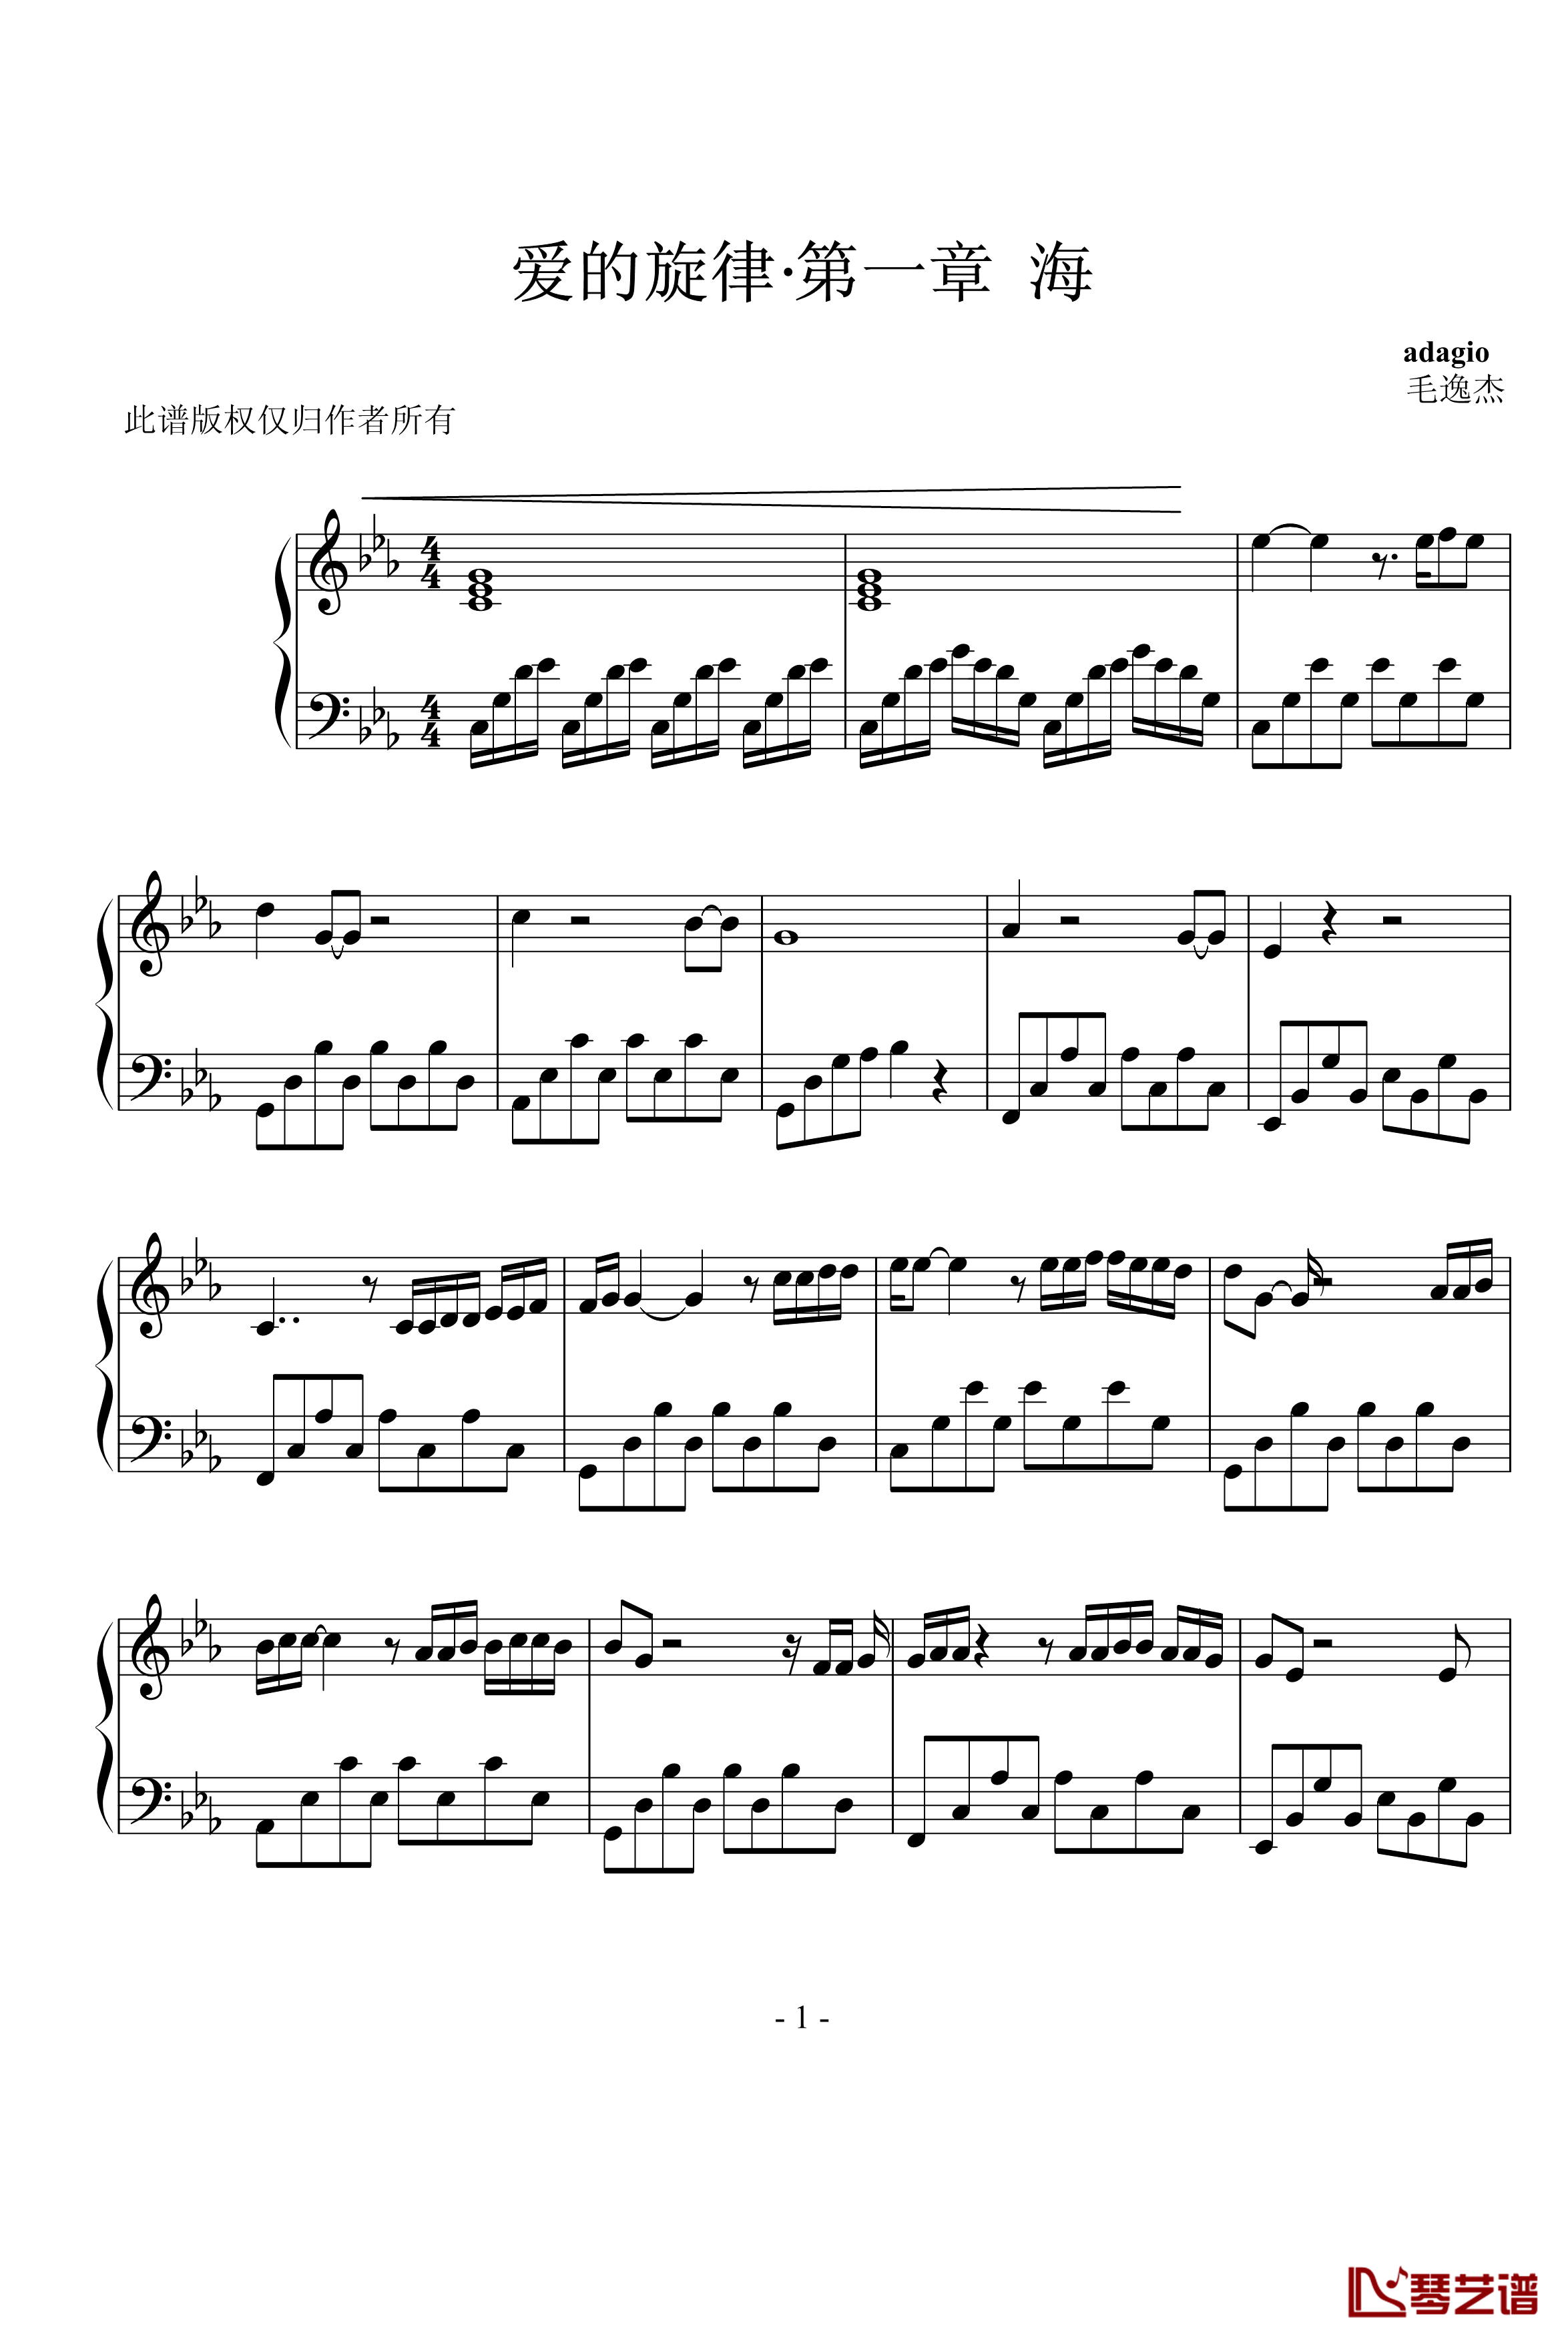 爱的旋律第一章海钢琴谱-延音修改-c4713137101